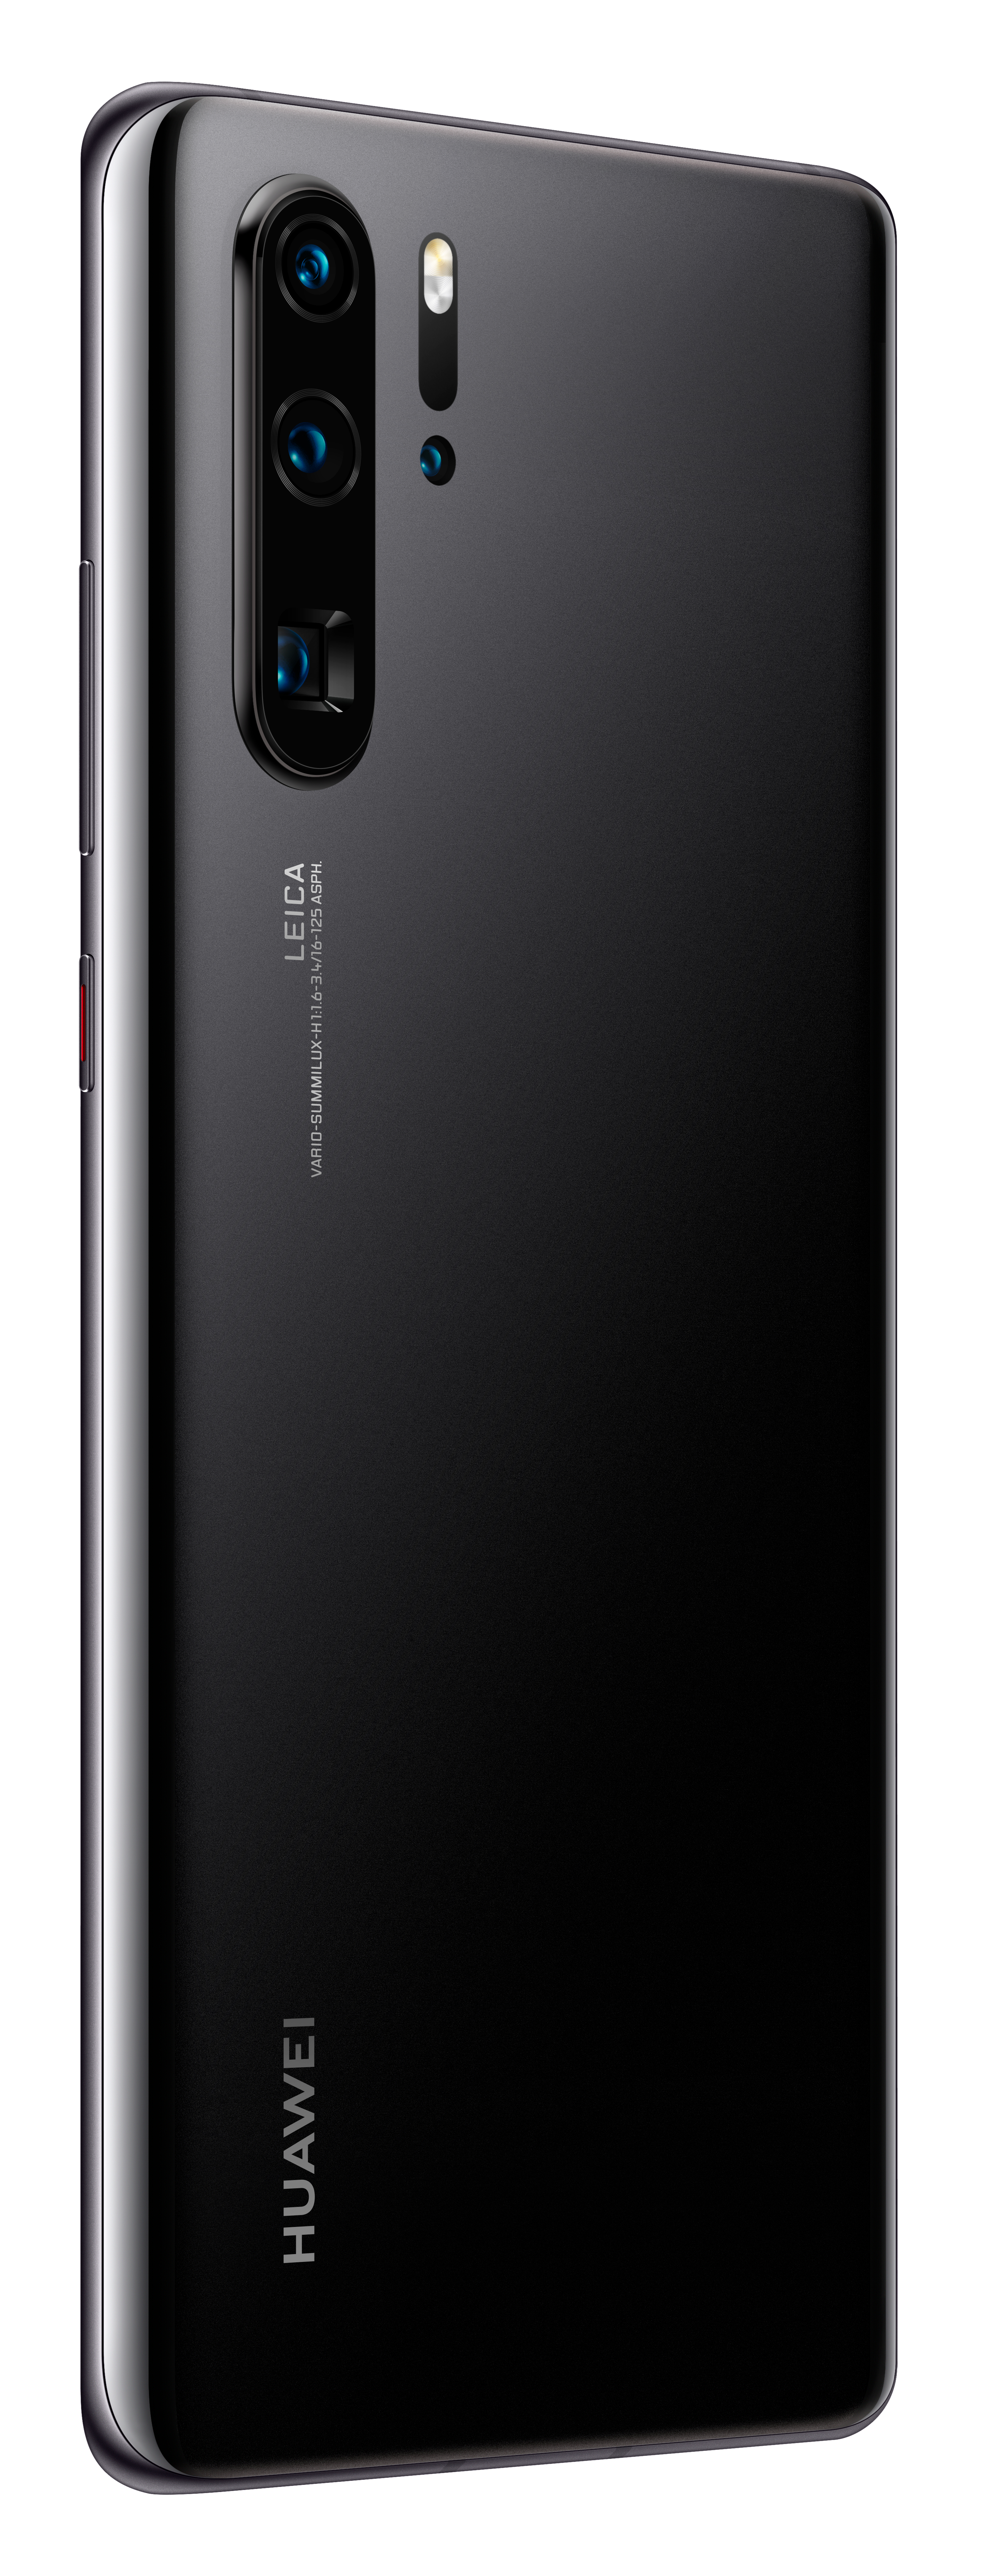 HUAWEI P30 Pro NEW EDITION GB Dual SIM 256 Black